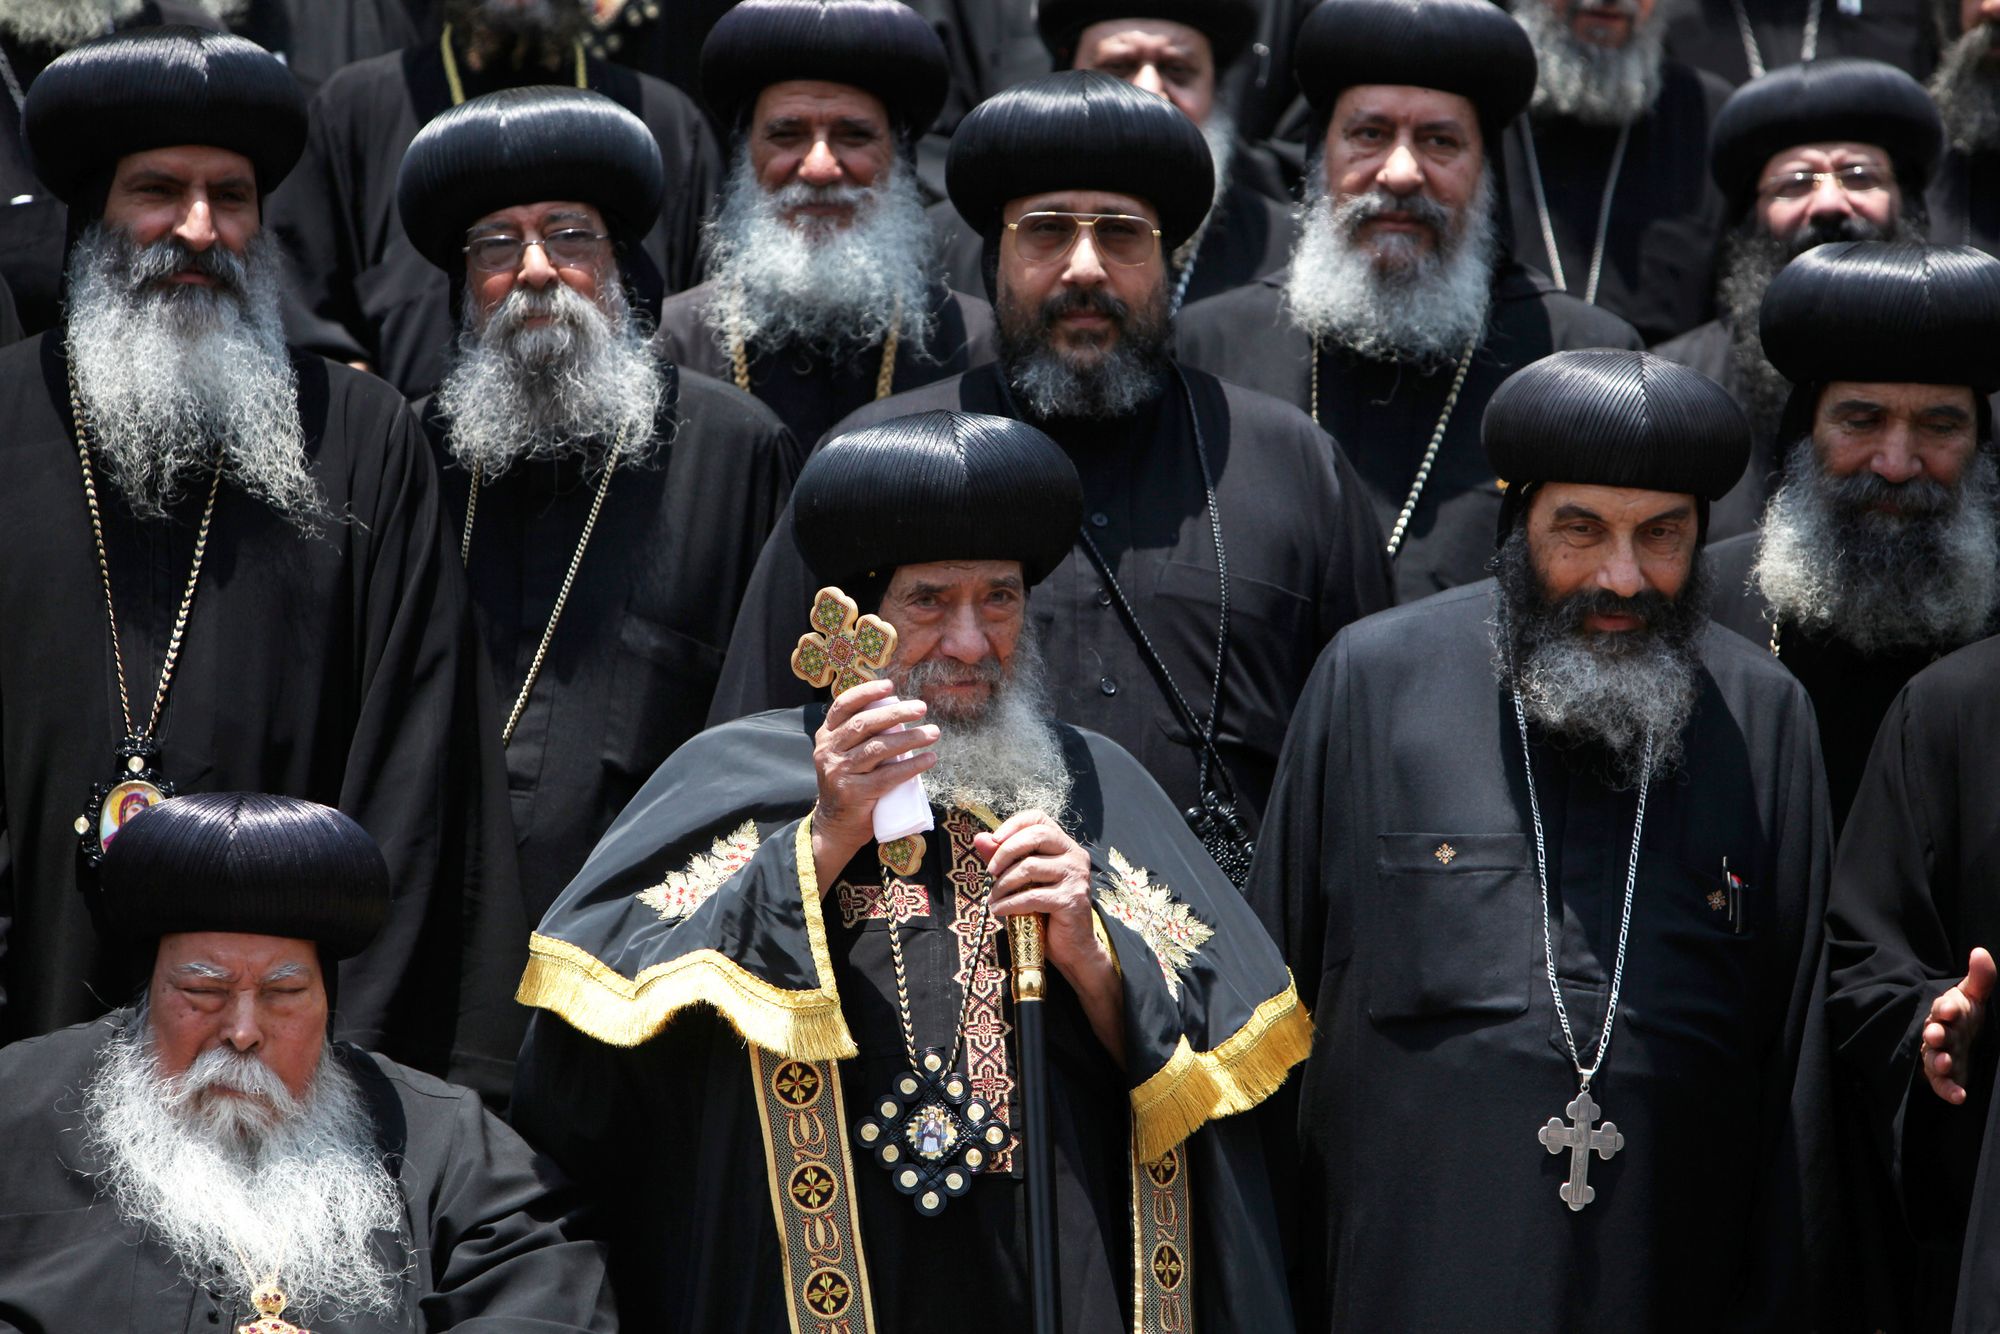 Другие православные конфессии